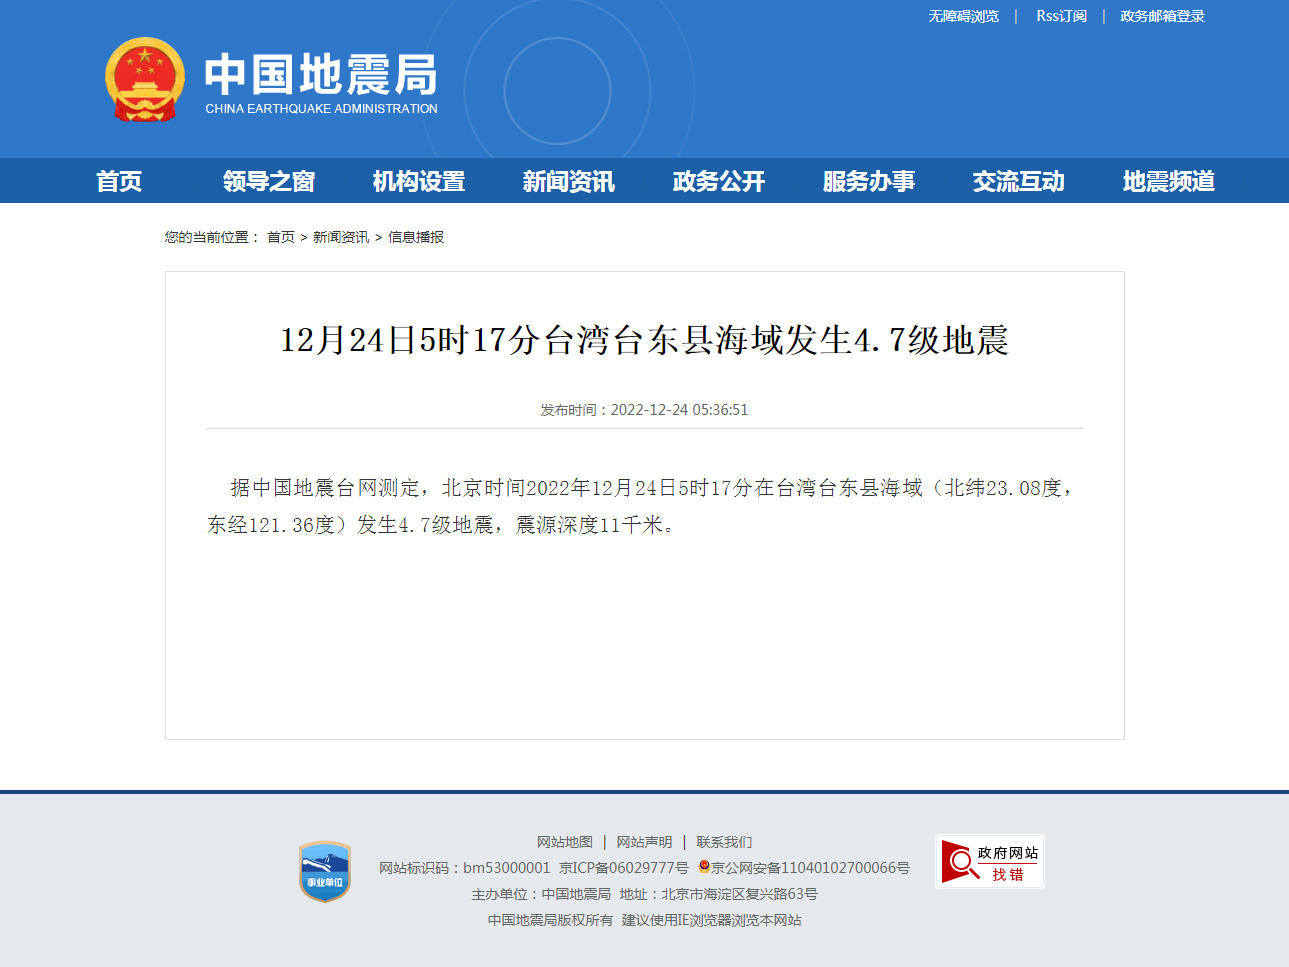 12月24日5时17分台湾台东县海域发生4.7级地震.png